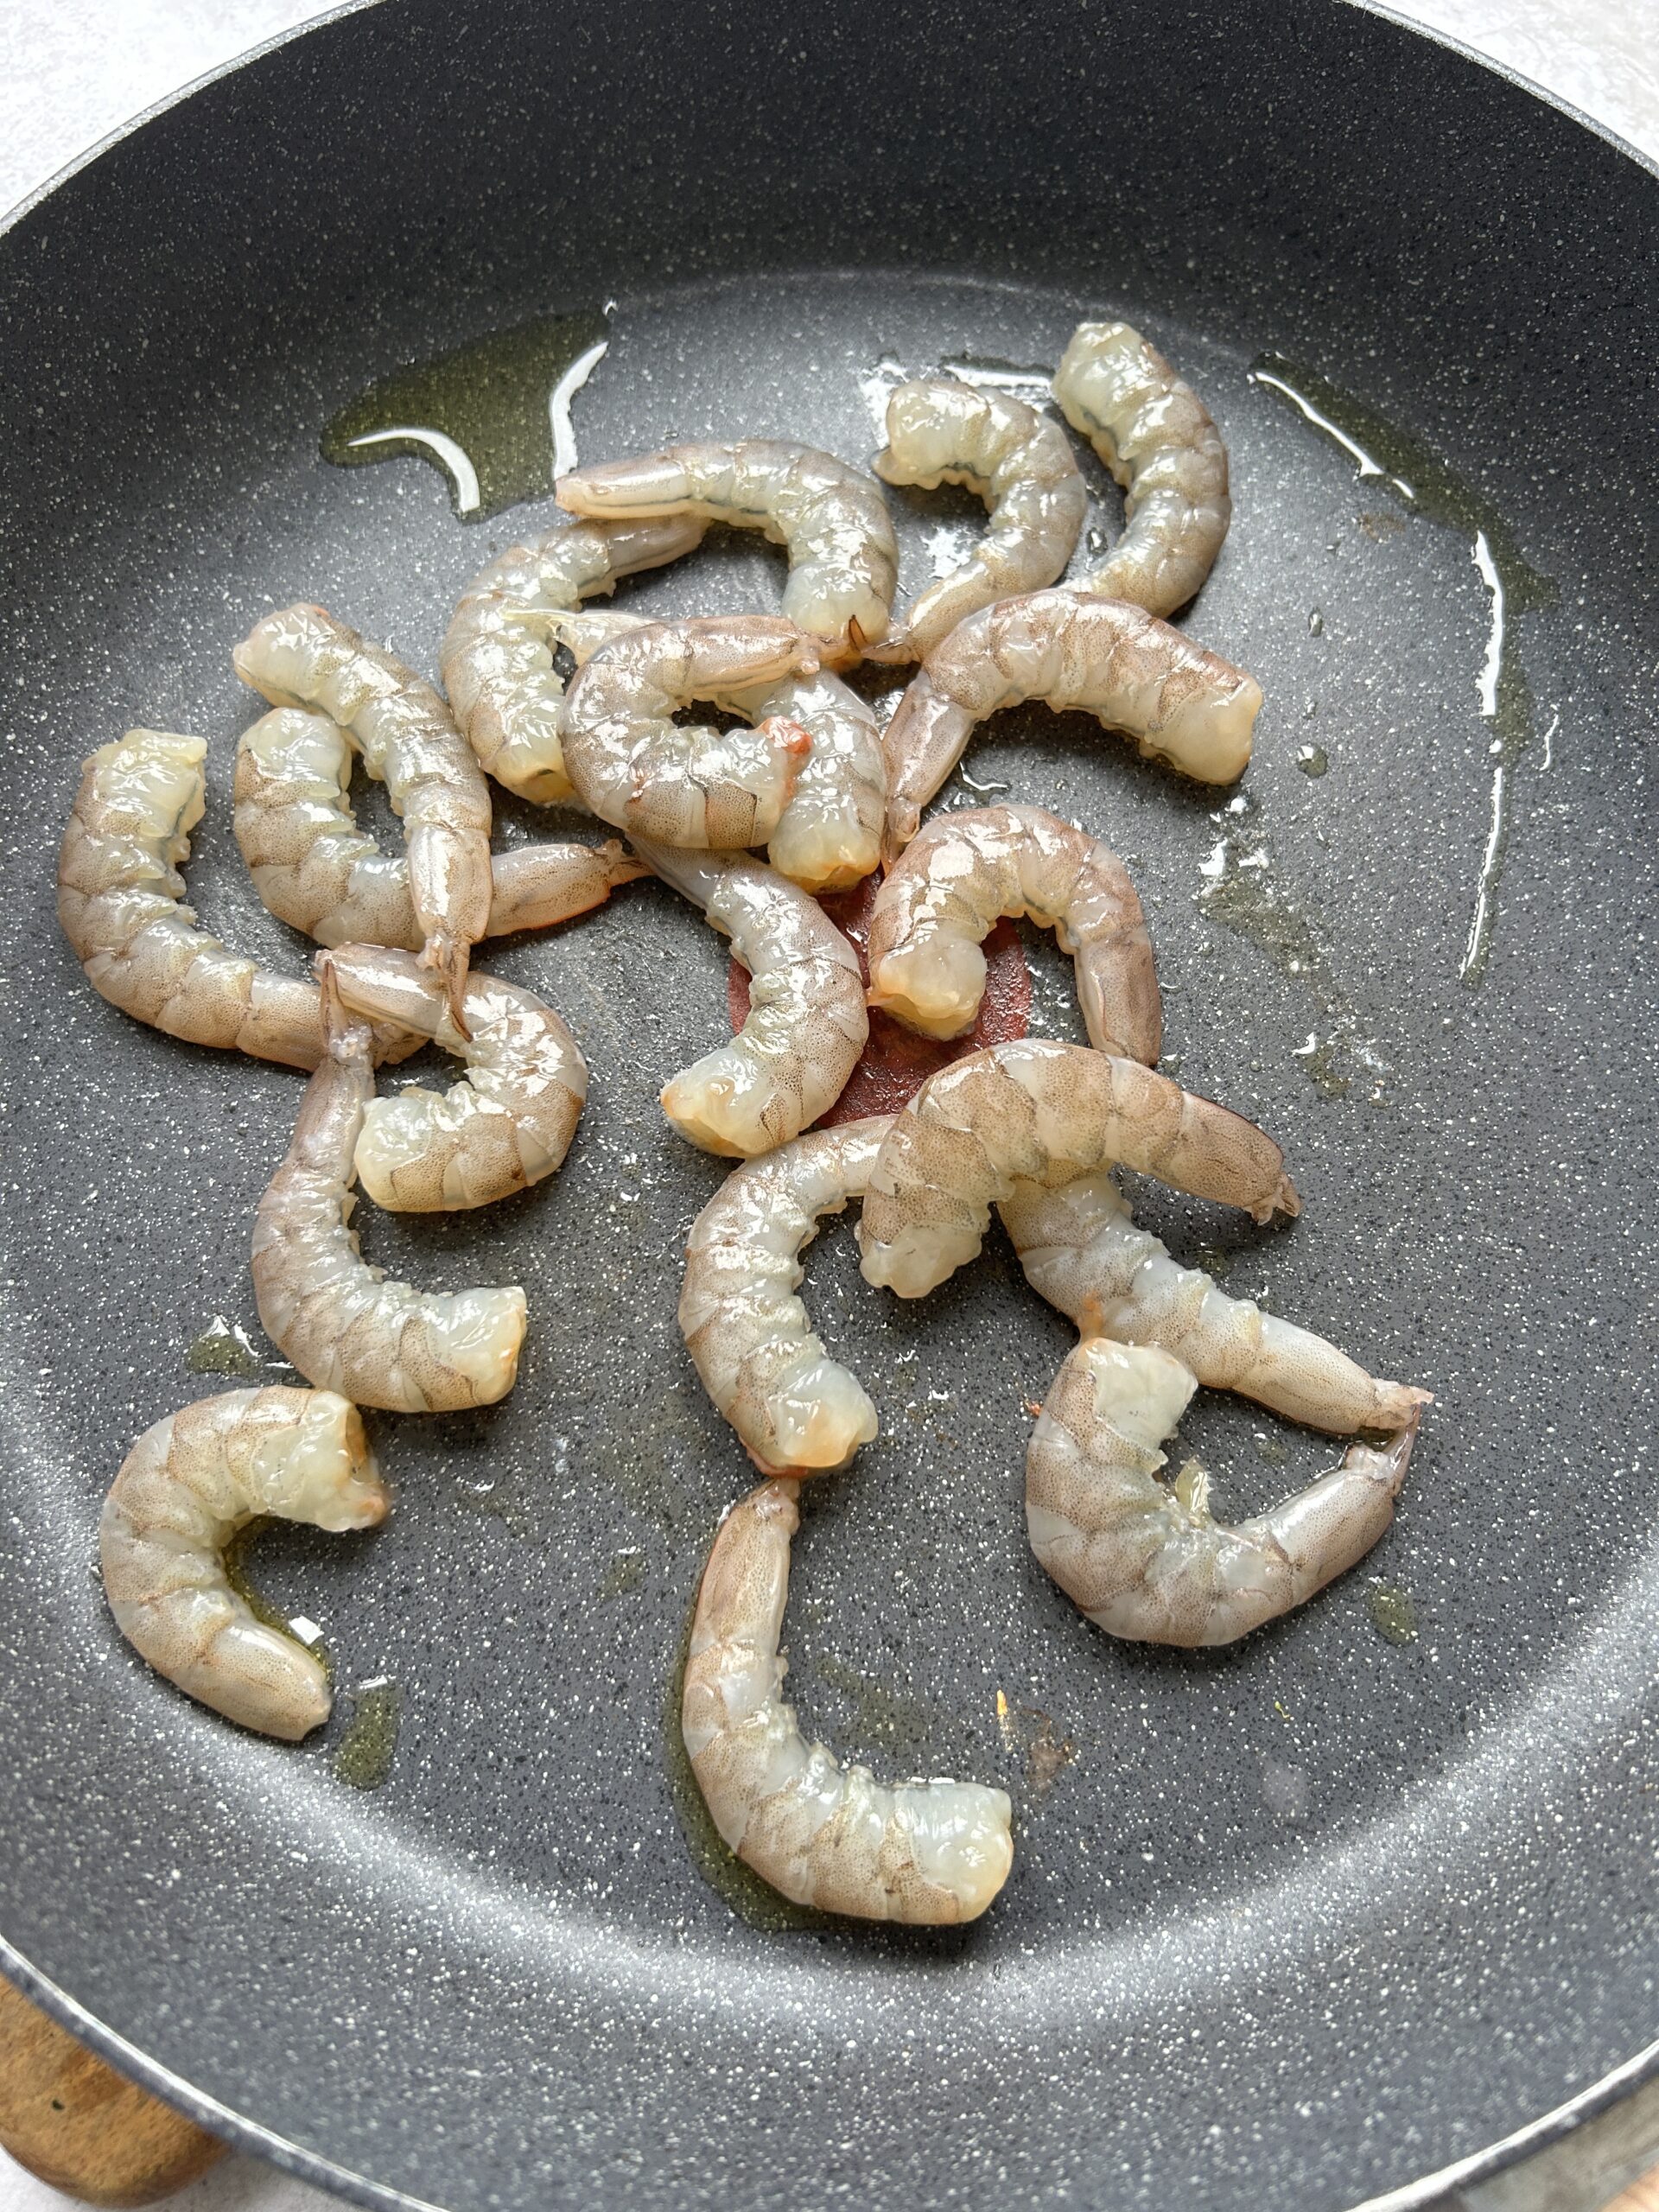 Crevettes crues dans une poêle avec de l'huile d'olive.